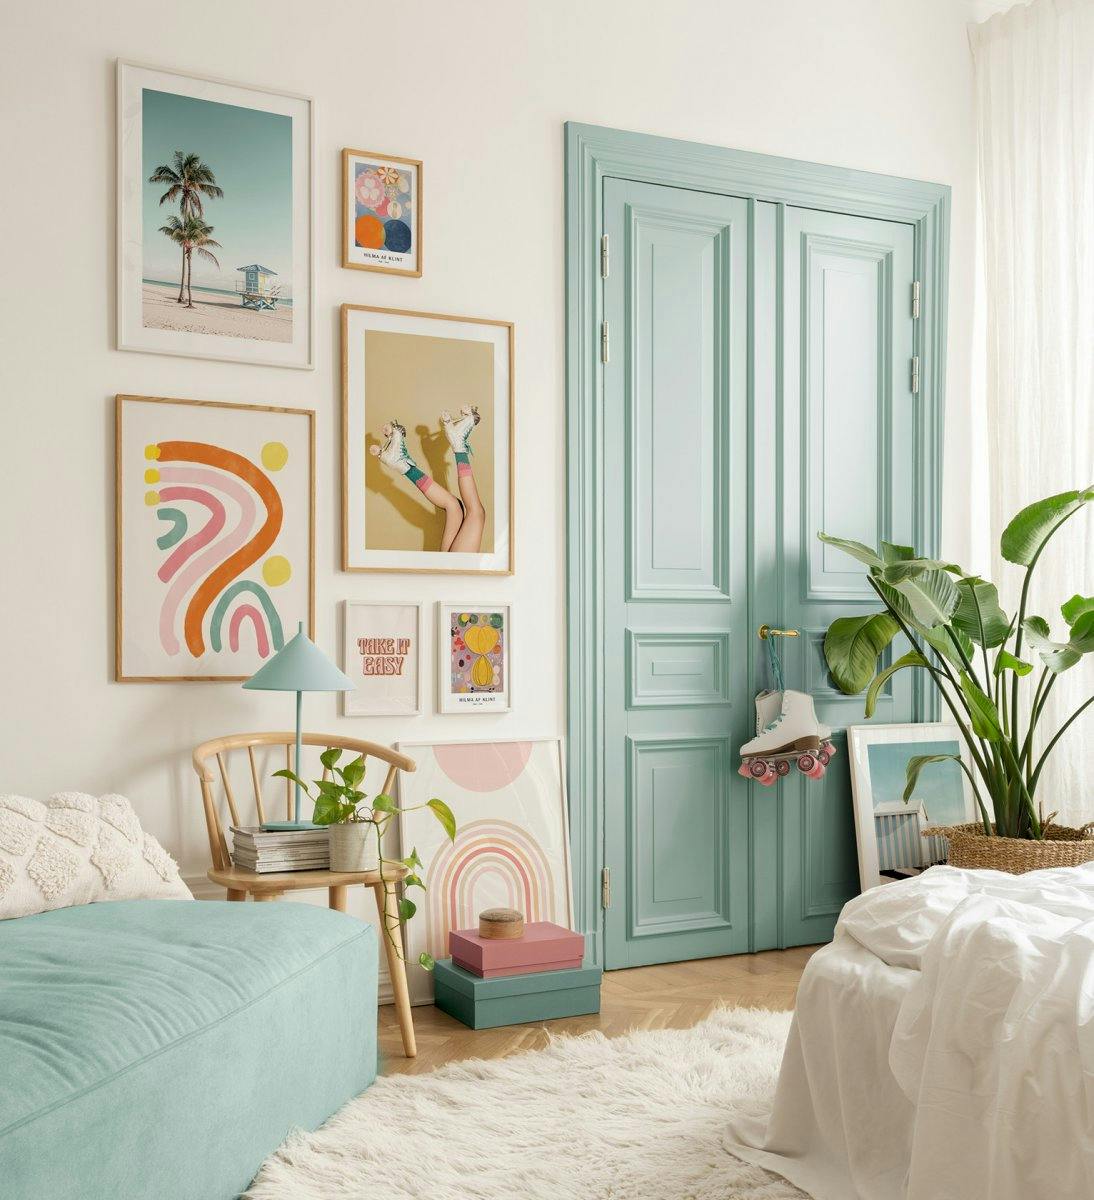 Fotografier og sitatplakater i lekne farger for en retro stemning i soverommet eller i stuen